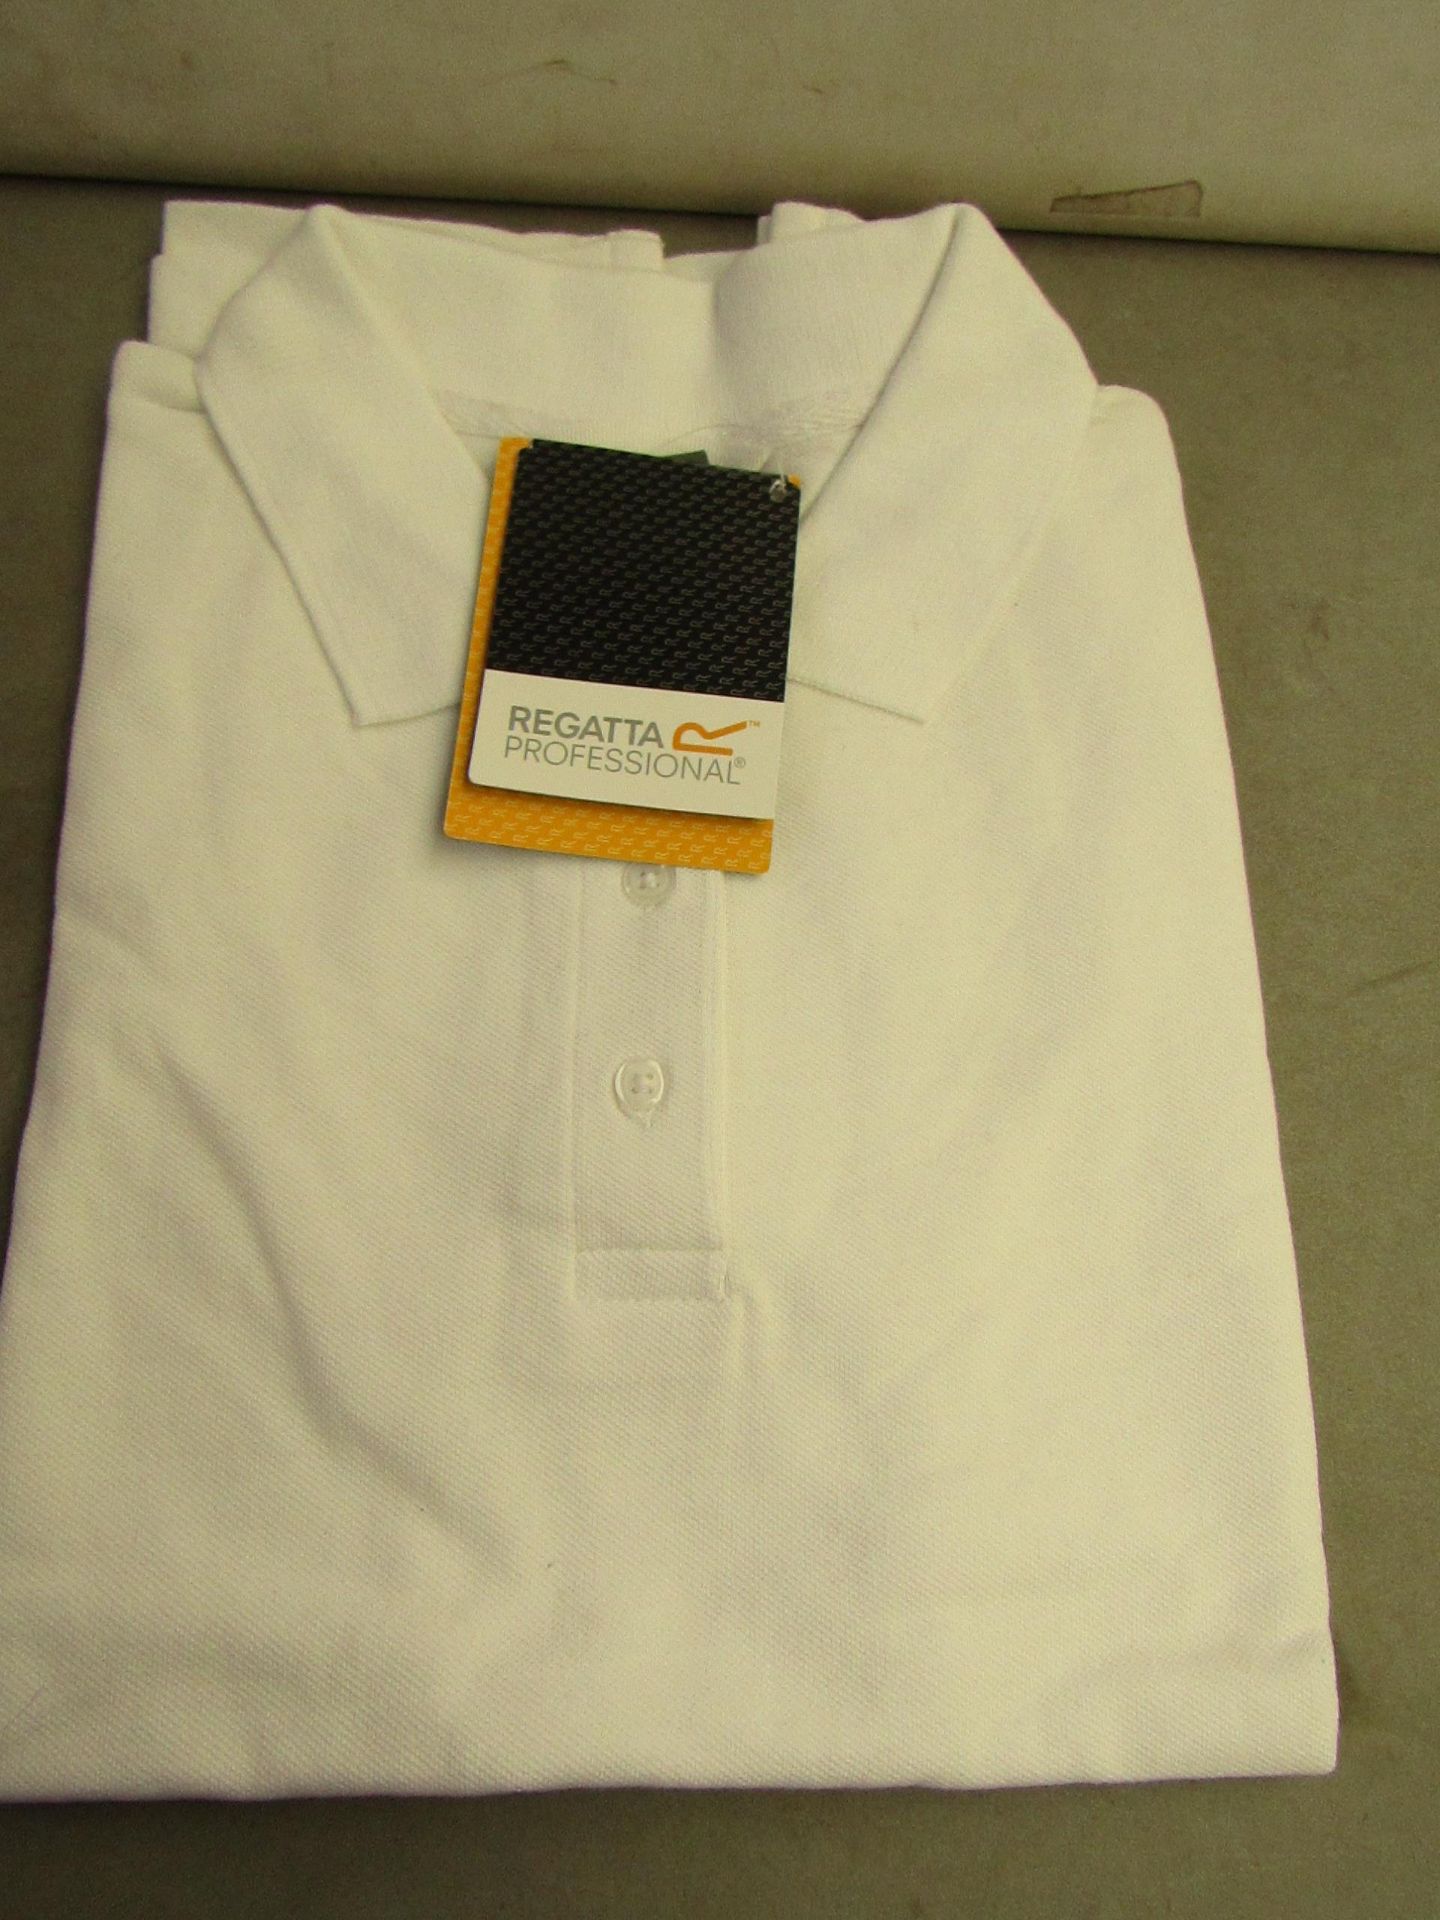 Regatta Polo Ladies Tshirt. Size 12. New & Packaged